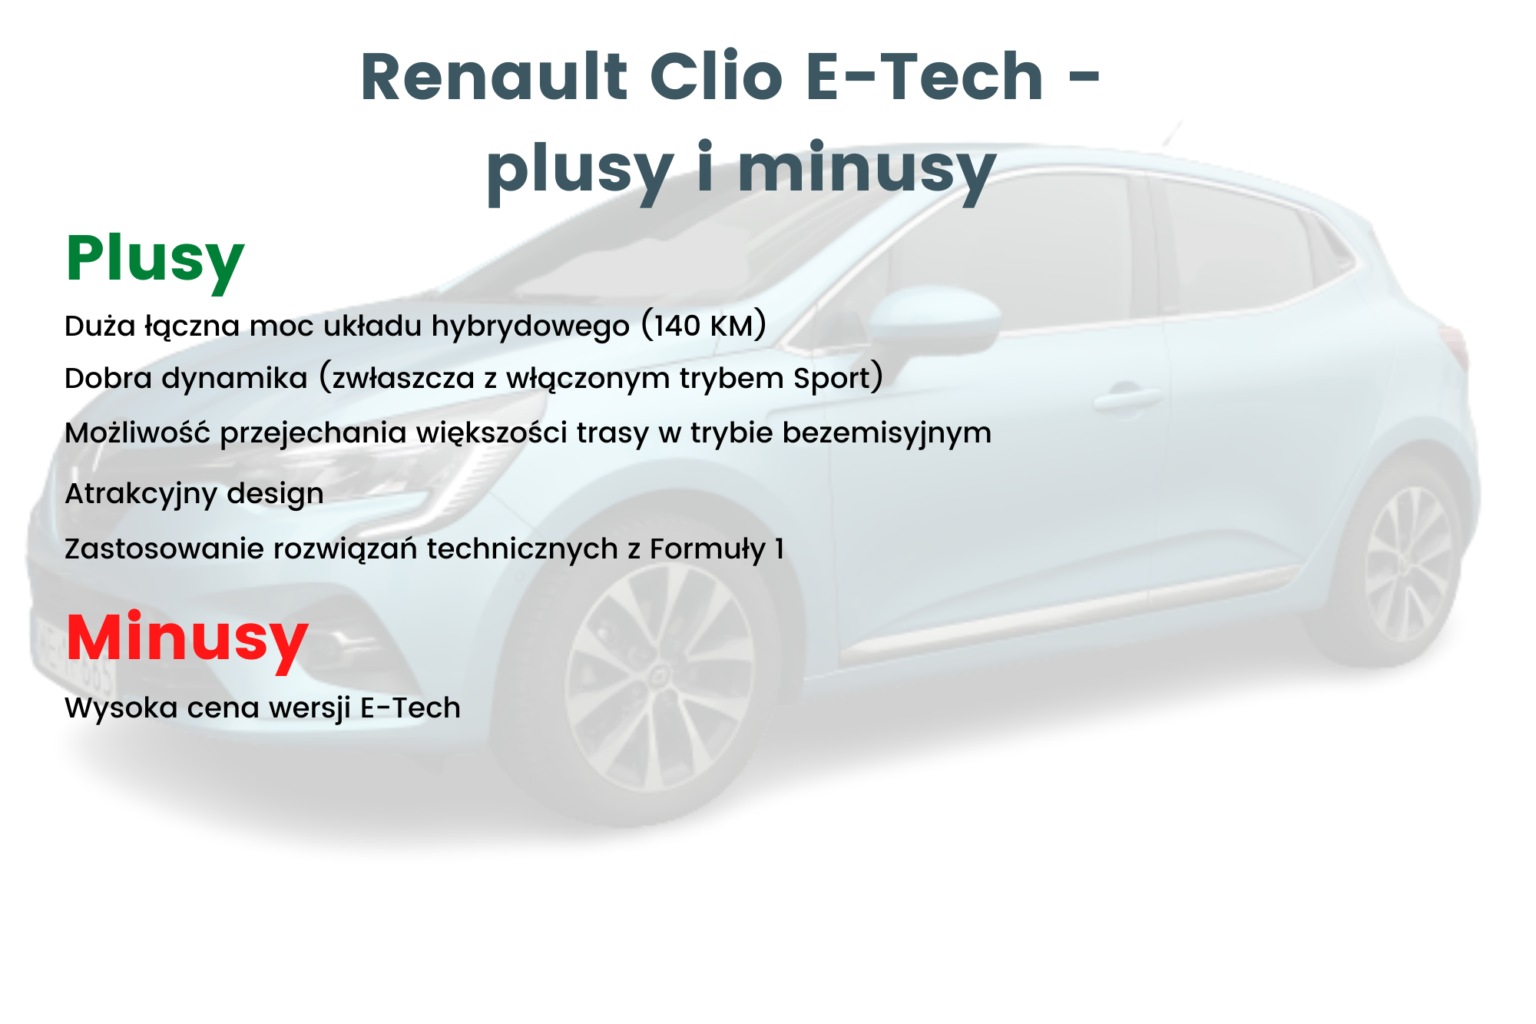 Renault Clio E-Tech - plusy i minusy